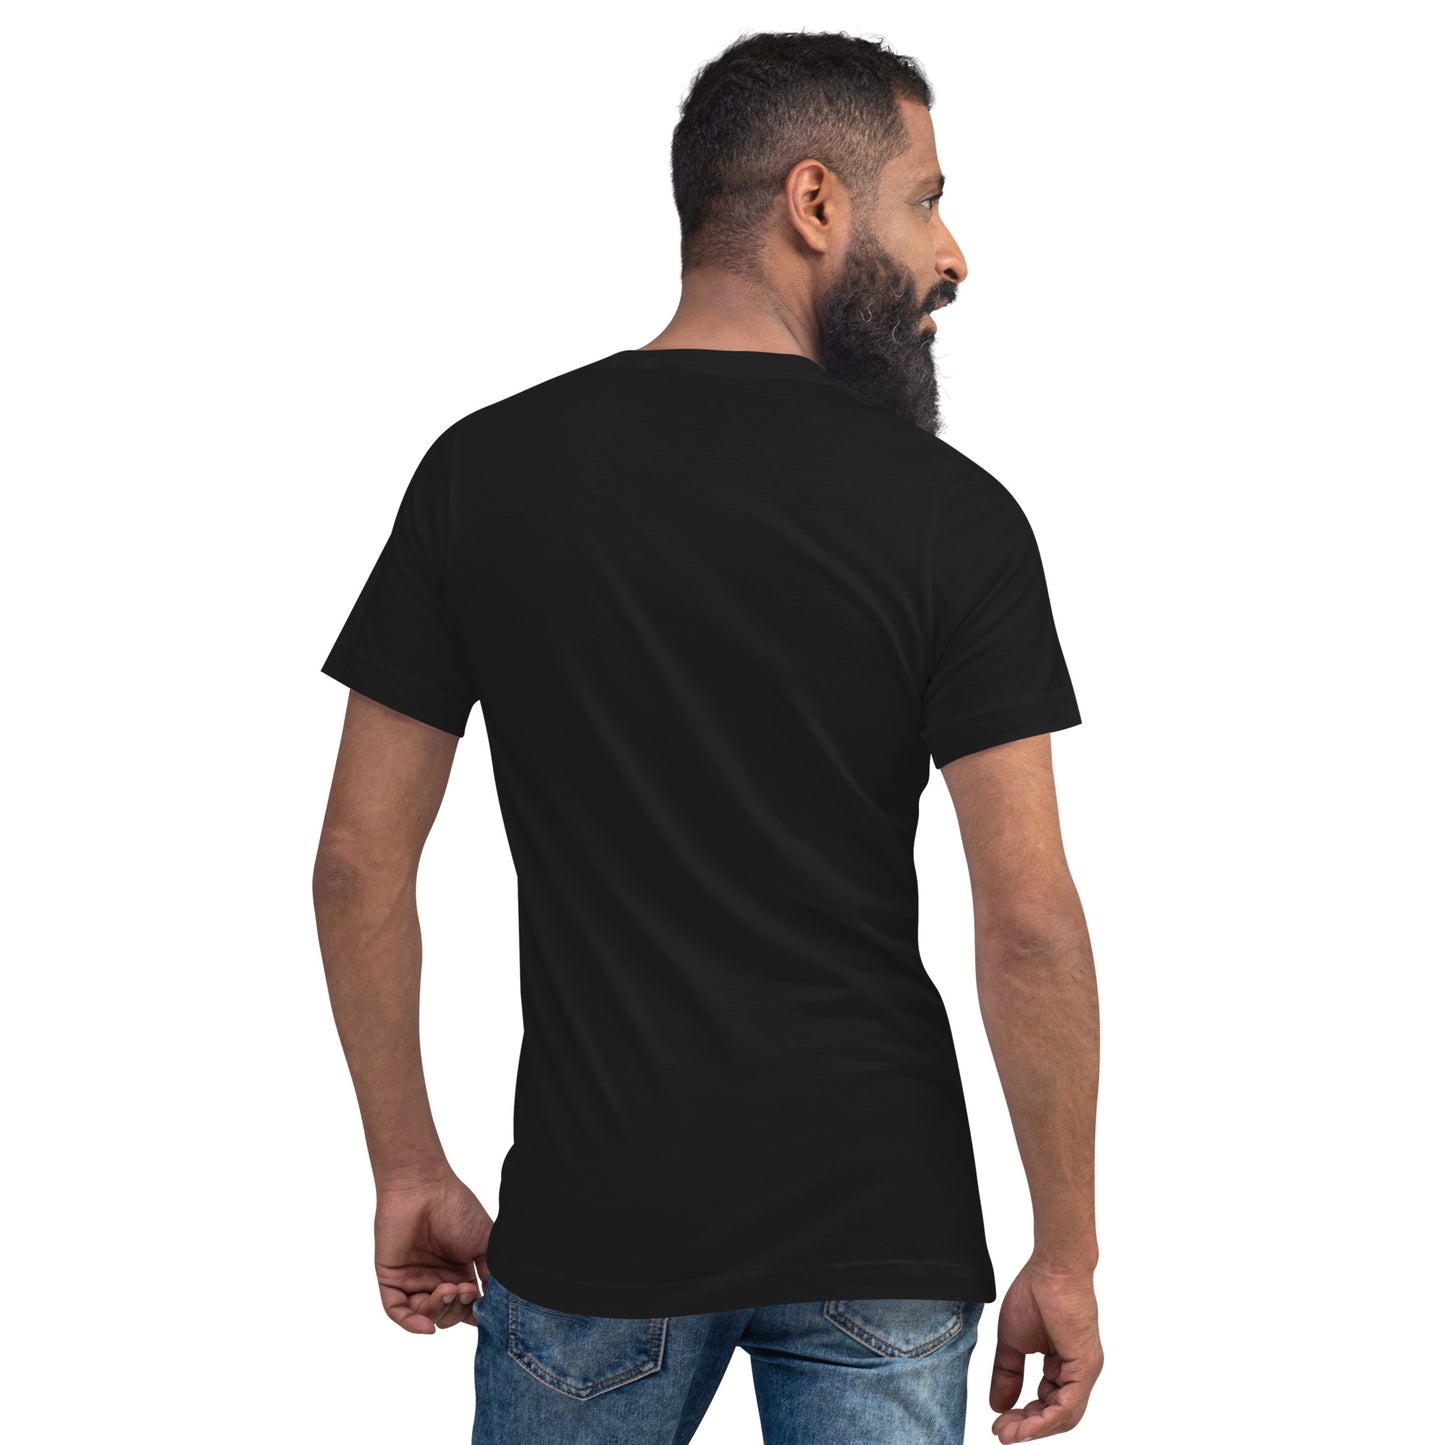 Shiba Inu Unisex Short Sleeve V-Neck T-Shirt | BKLA | Shirts & Tops | Tshirt, crop top, tee, sleeve tee, tank top, cotton tee